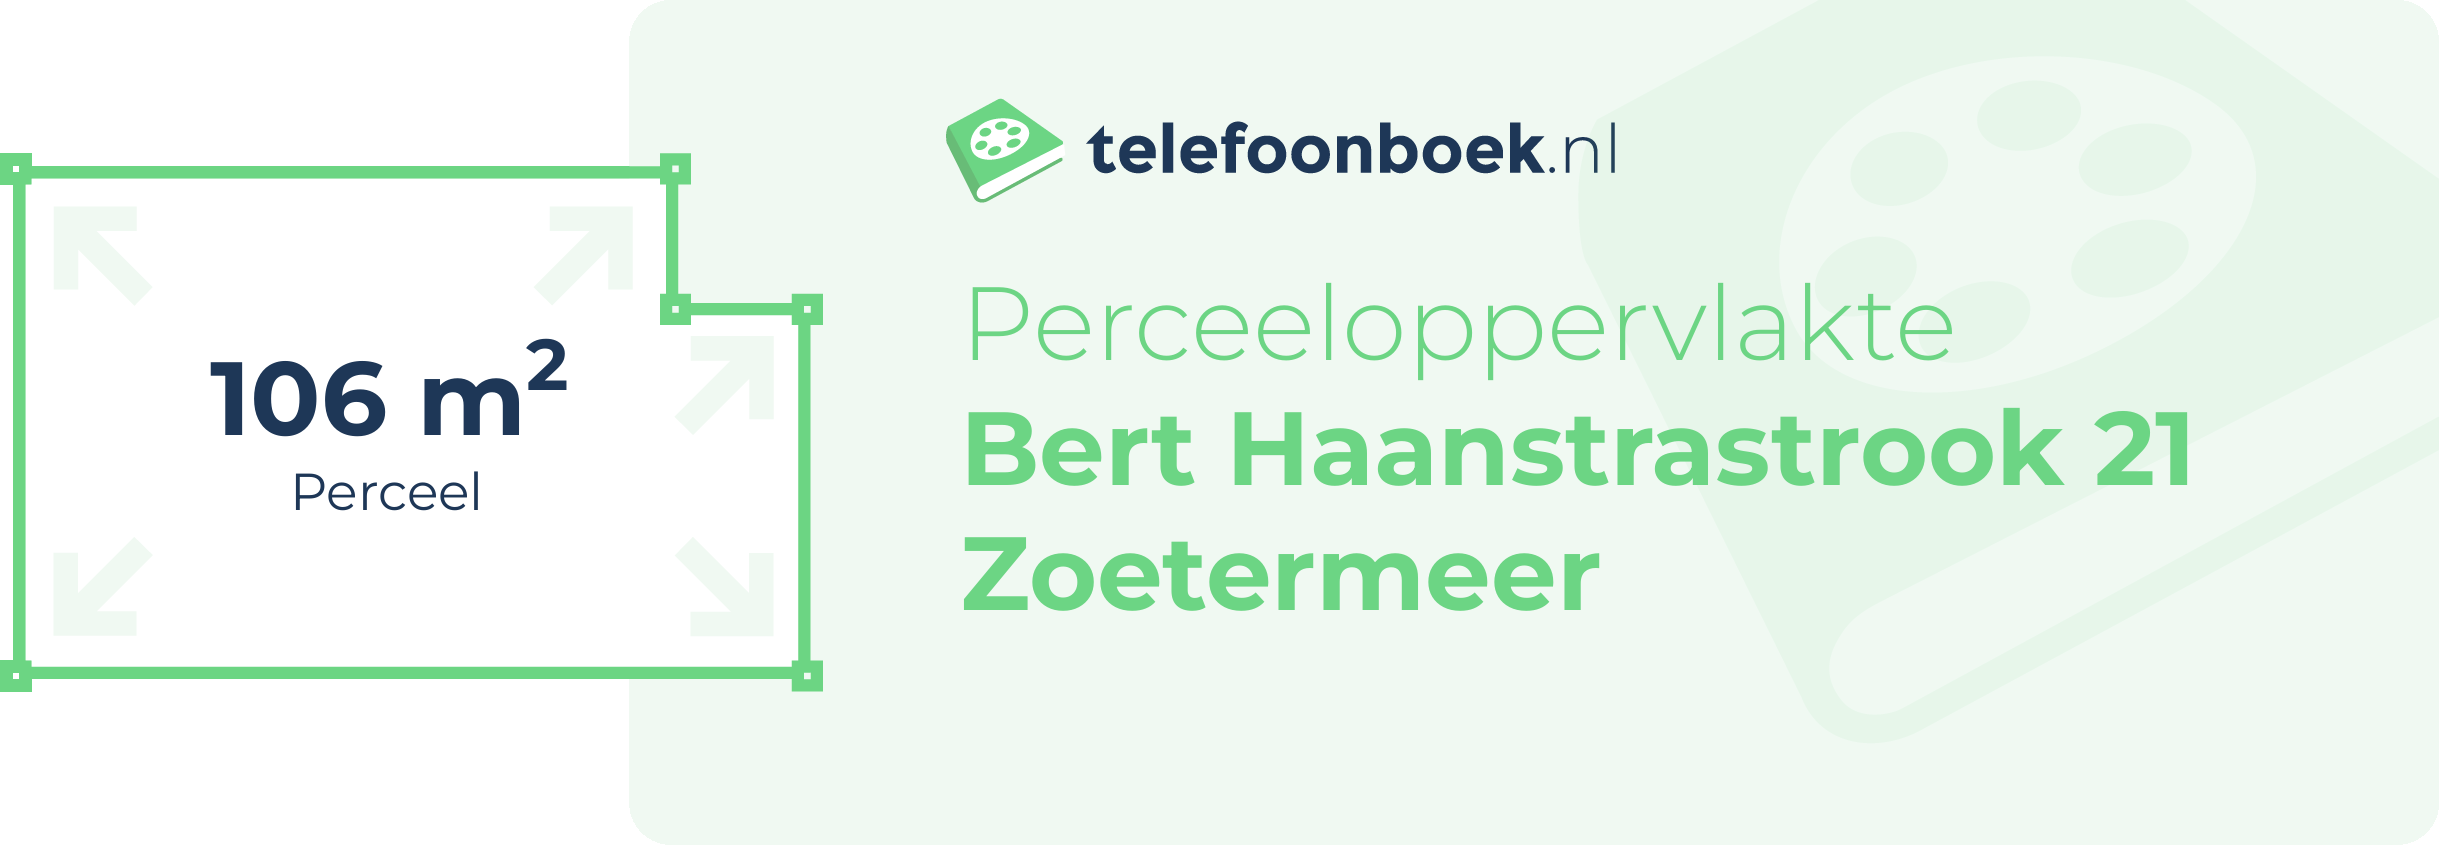 Perceeloppervlakte Bert Haanstrastrook 21 Zoetermeer